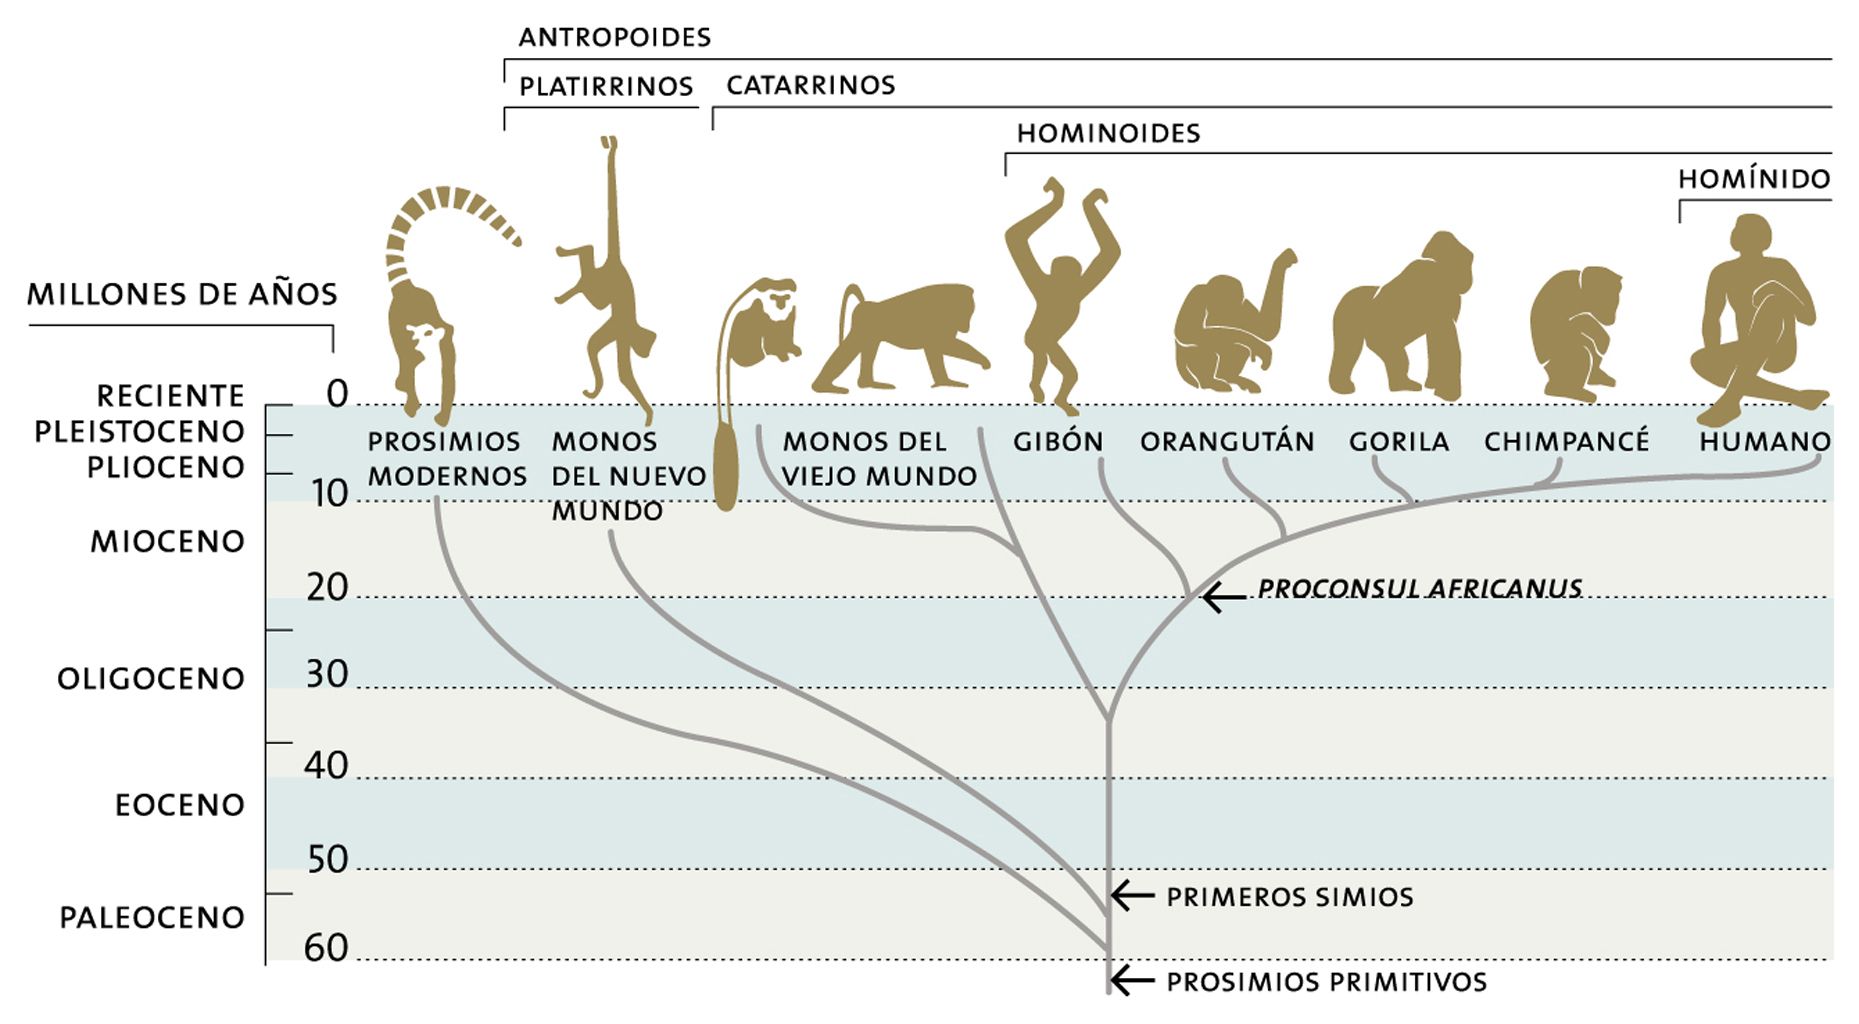 Figura 2. Árbol filogenético de los primates. Tomada de http://paginaspersonales.deusto.es/airibar/Musica/L&M/L&M_06.html